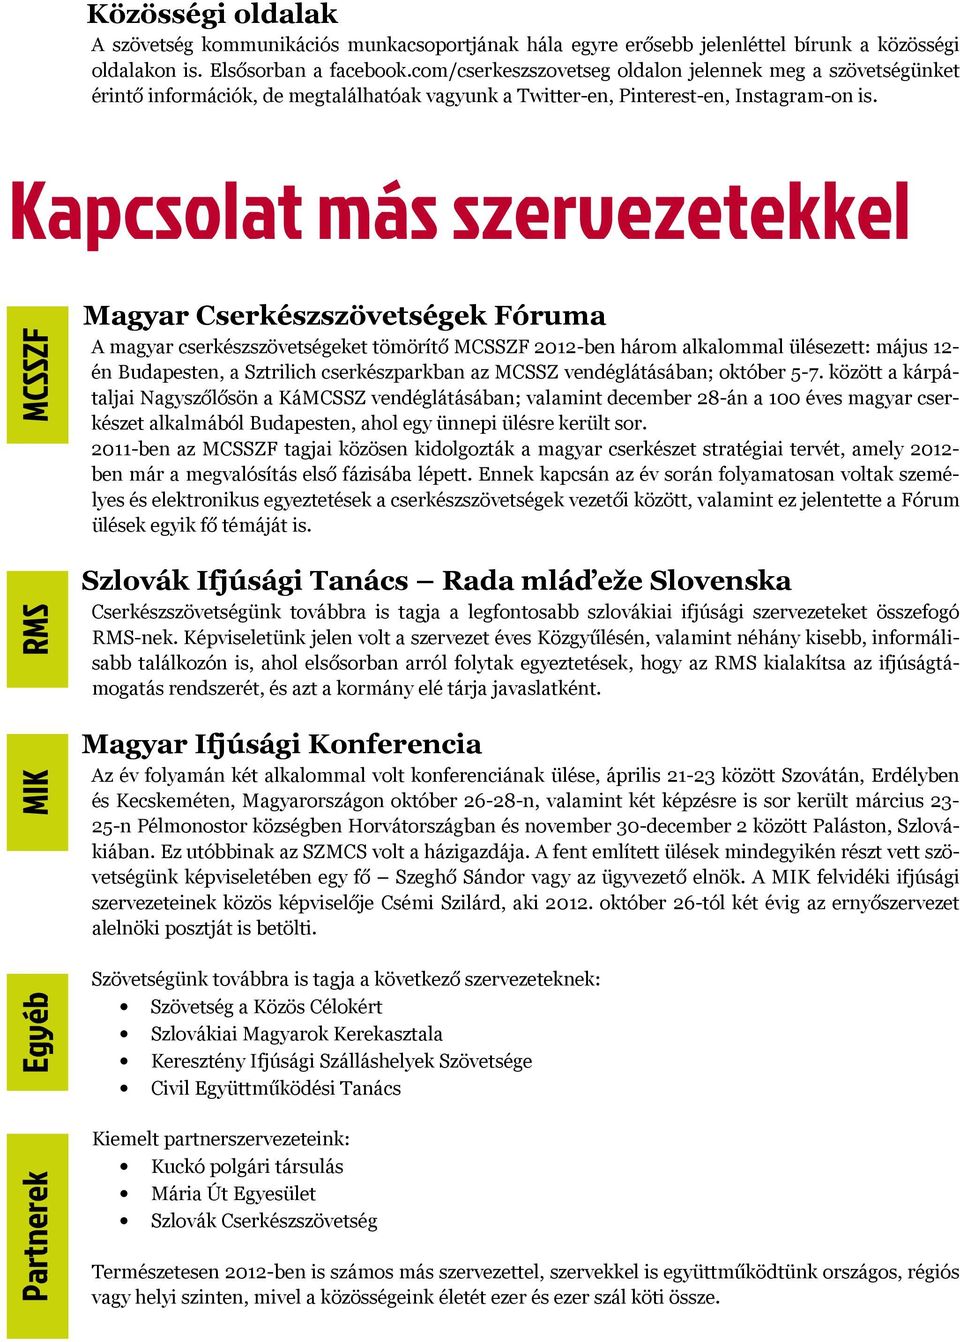 Kapcsolat más szervezetekkel Partnerek Egyéb MIK RMS MCSSZF Magyar Cserkészszövetségek Fóruma A magyar cserkészszövetségeket tömörítő MCSSZF 2012-ben három alkalommal ülésezett: május 12- én